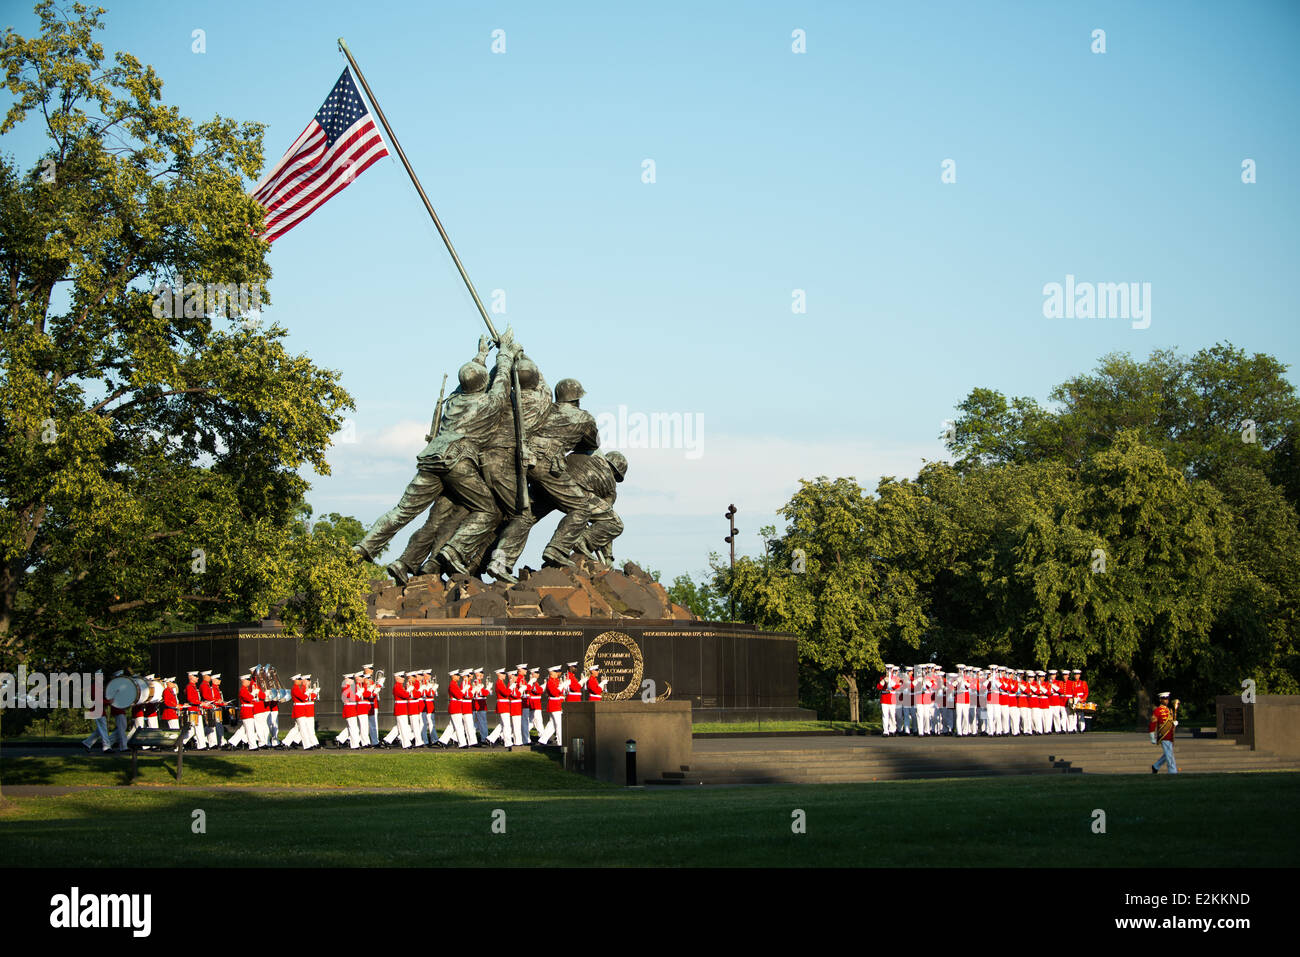 Le United States Marine Corps de tambours et clairons, connu en tant que le commandant lui-même, fonctionne à la parade au coucher du soleil à l'Iwo Jima Memorial d'Arlington, en Virginie, à proximité de Arlington National Cemetery. Banque D'Images